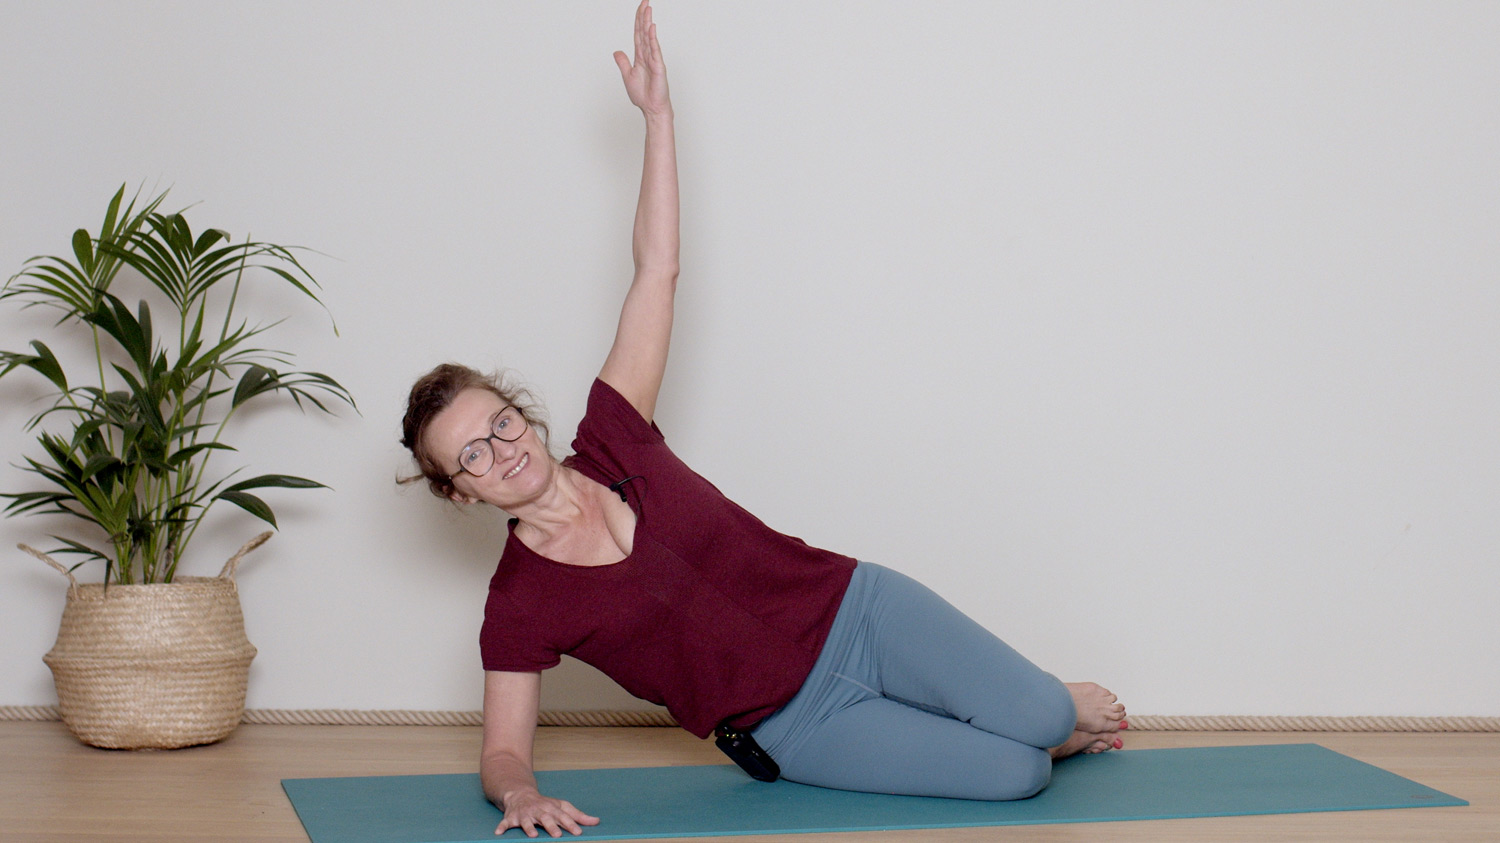 Spécial dos : Libérer la nuque | Cours de yoga en ligne avec Delphine Denis | Hatha Yoga dynamique